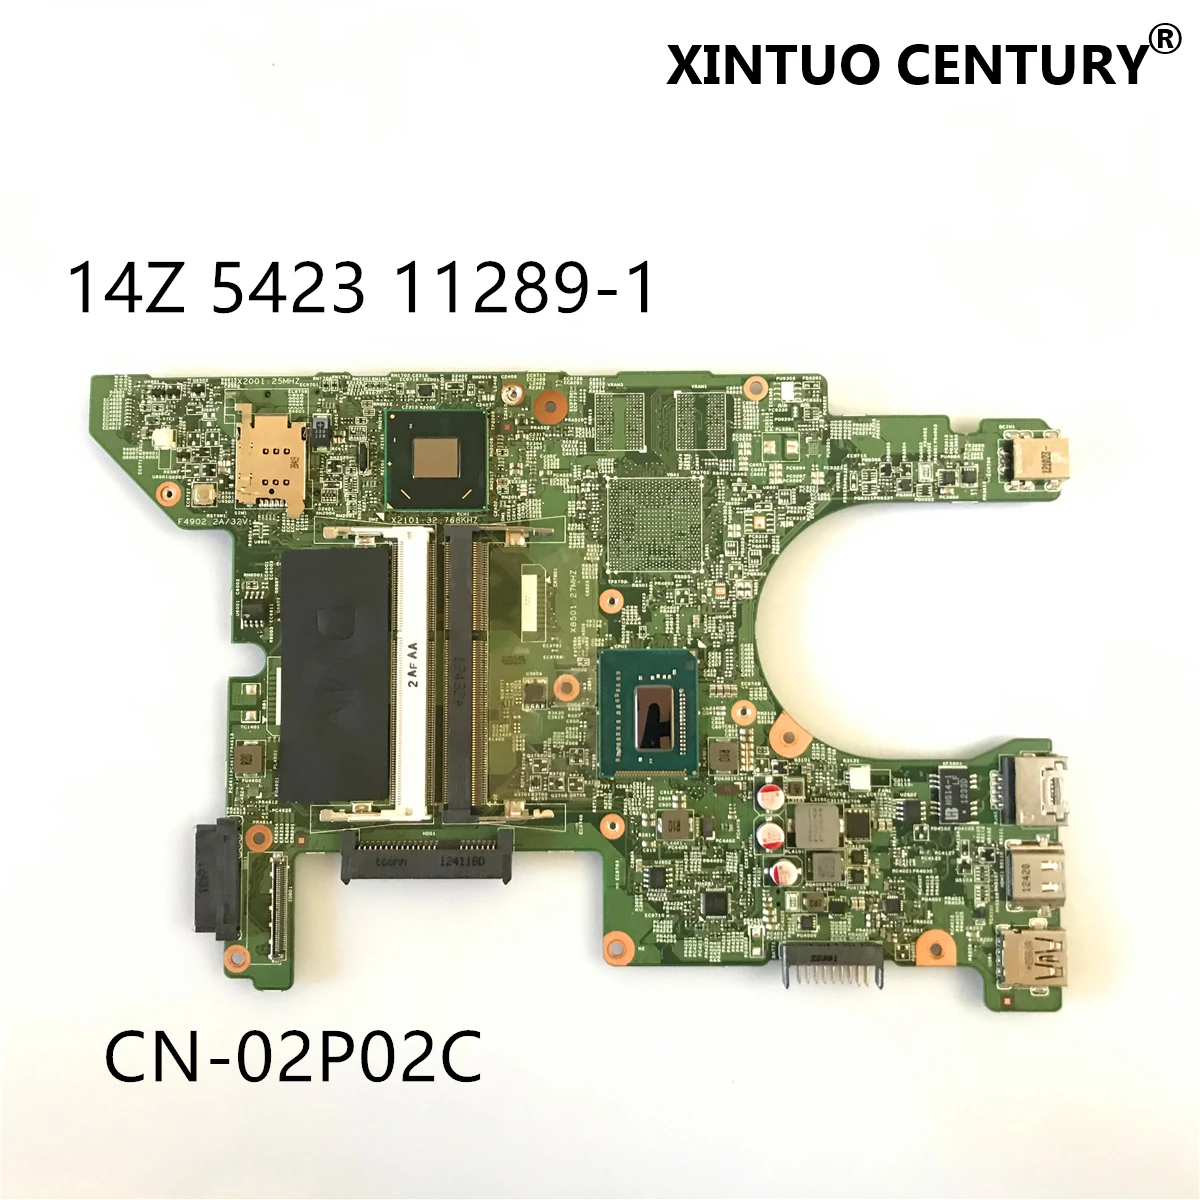 CN-02P02C 02P02C 2P02C DMB40 11289-1  Dell Inspiron 14Z 5423    w/ i3-3217U  DDR3 100%  